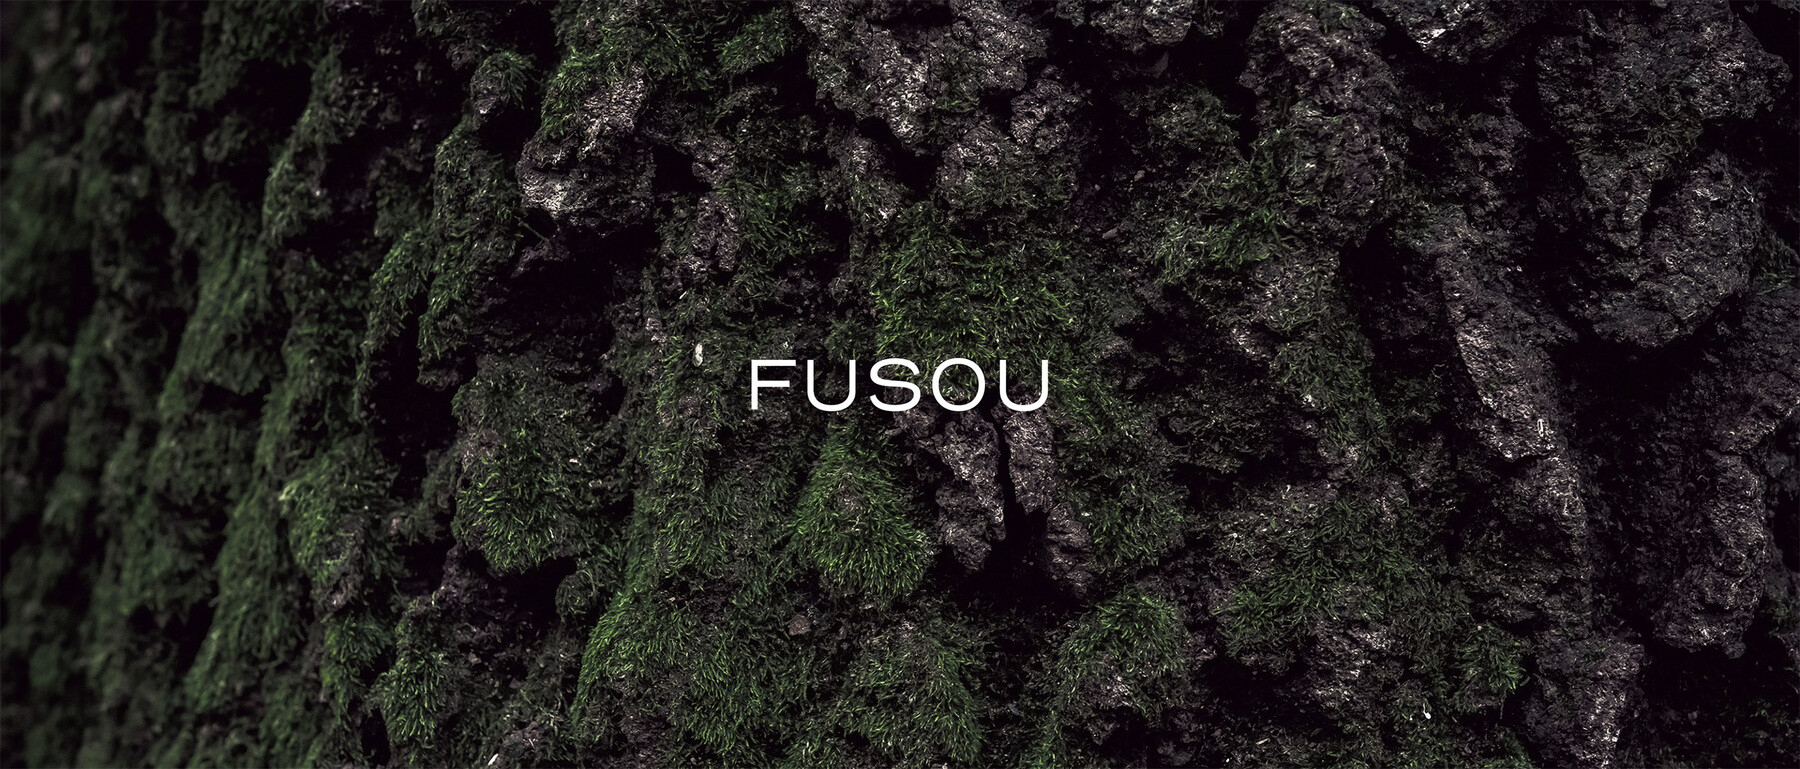 【受付終了】FUSOU (期間限定)のカバー画像